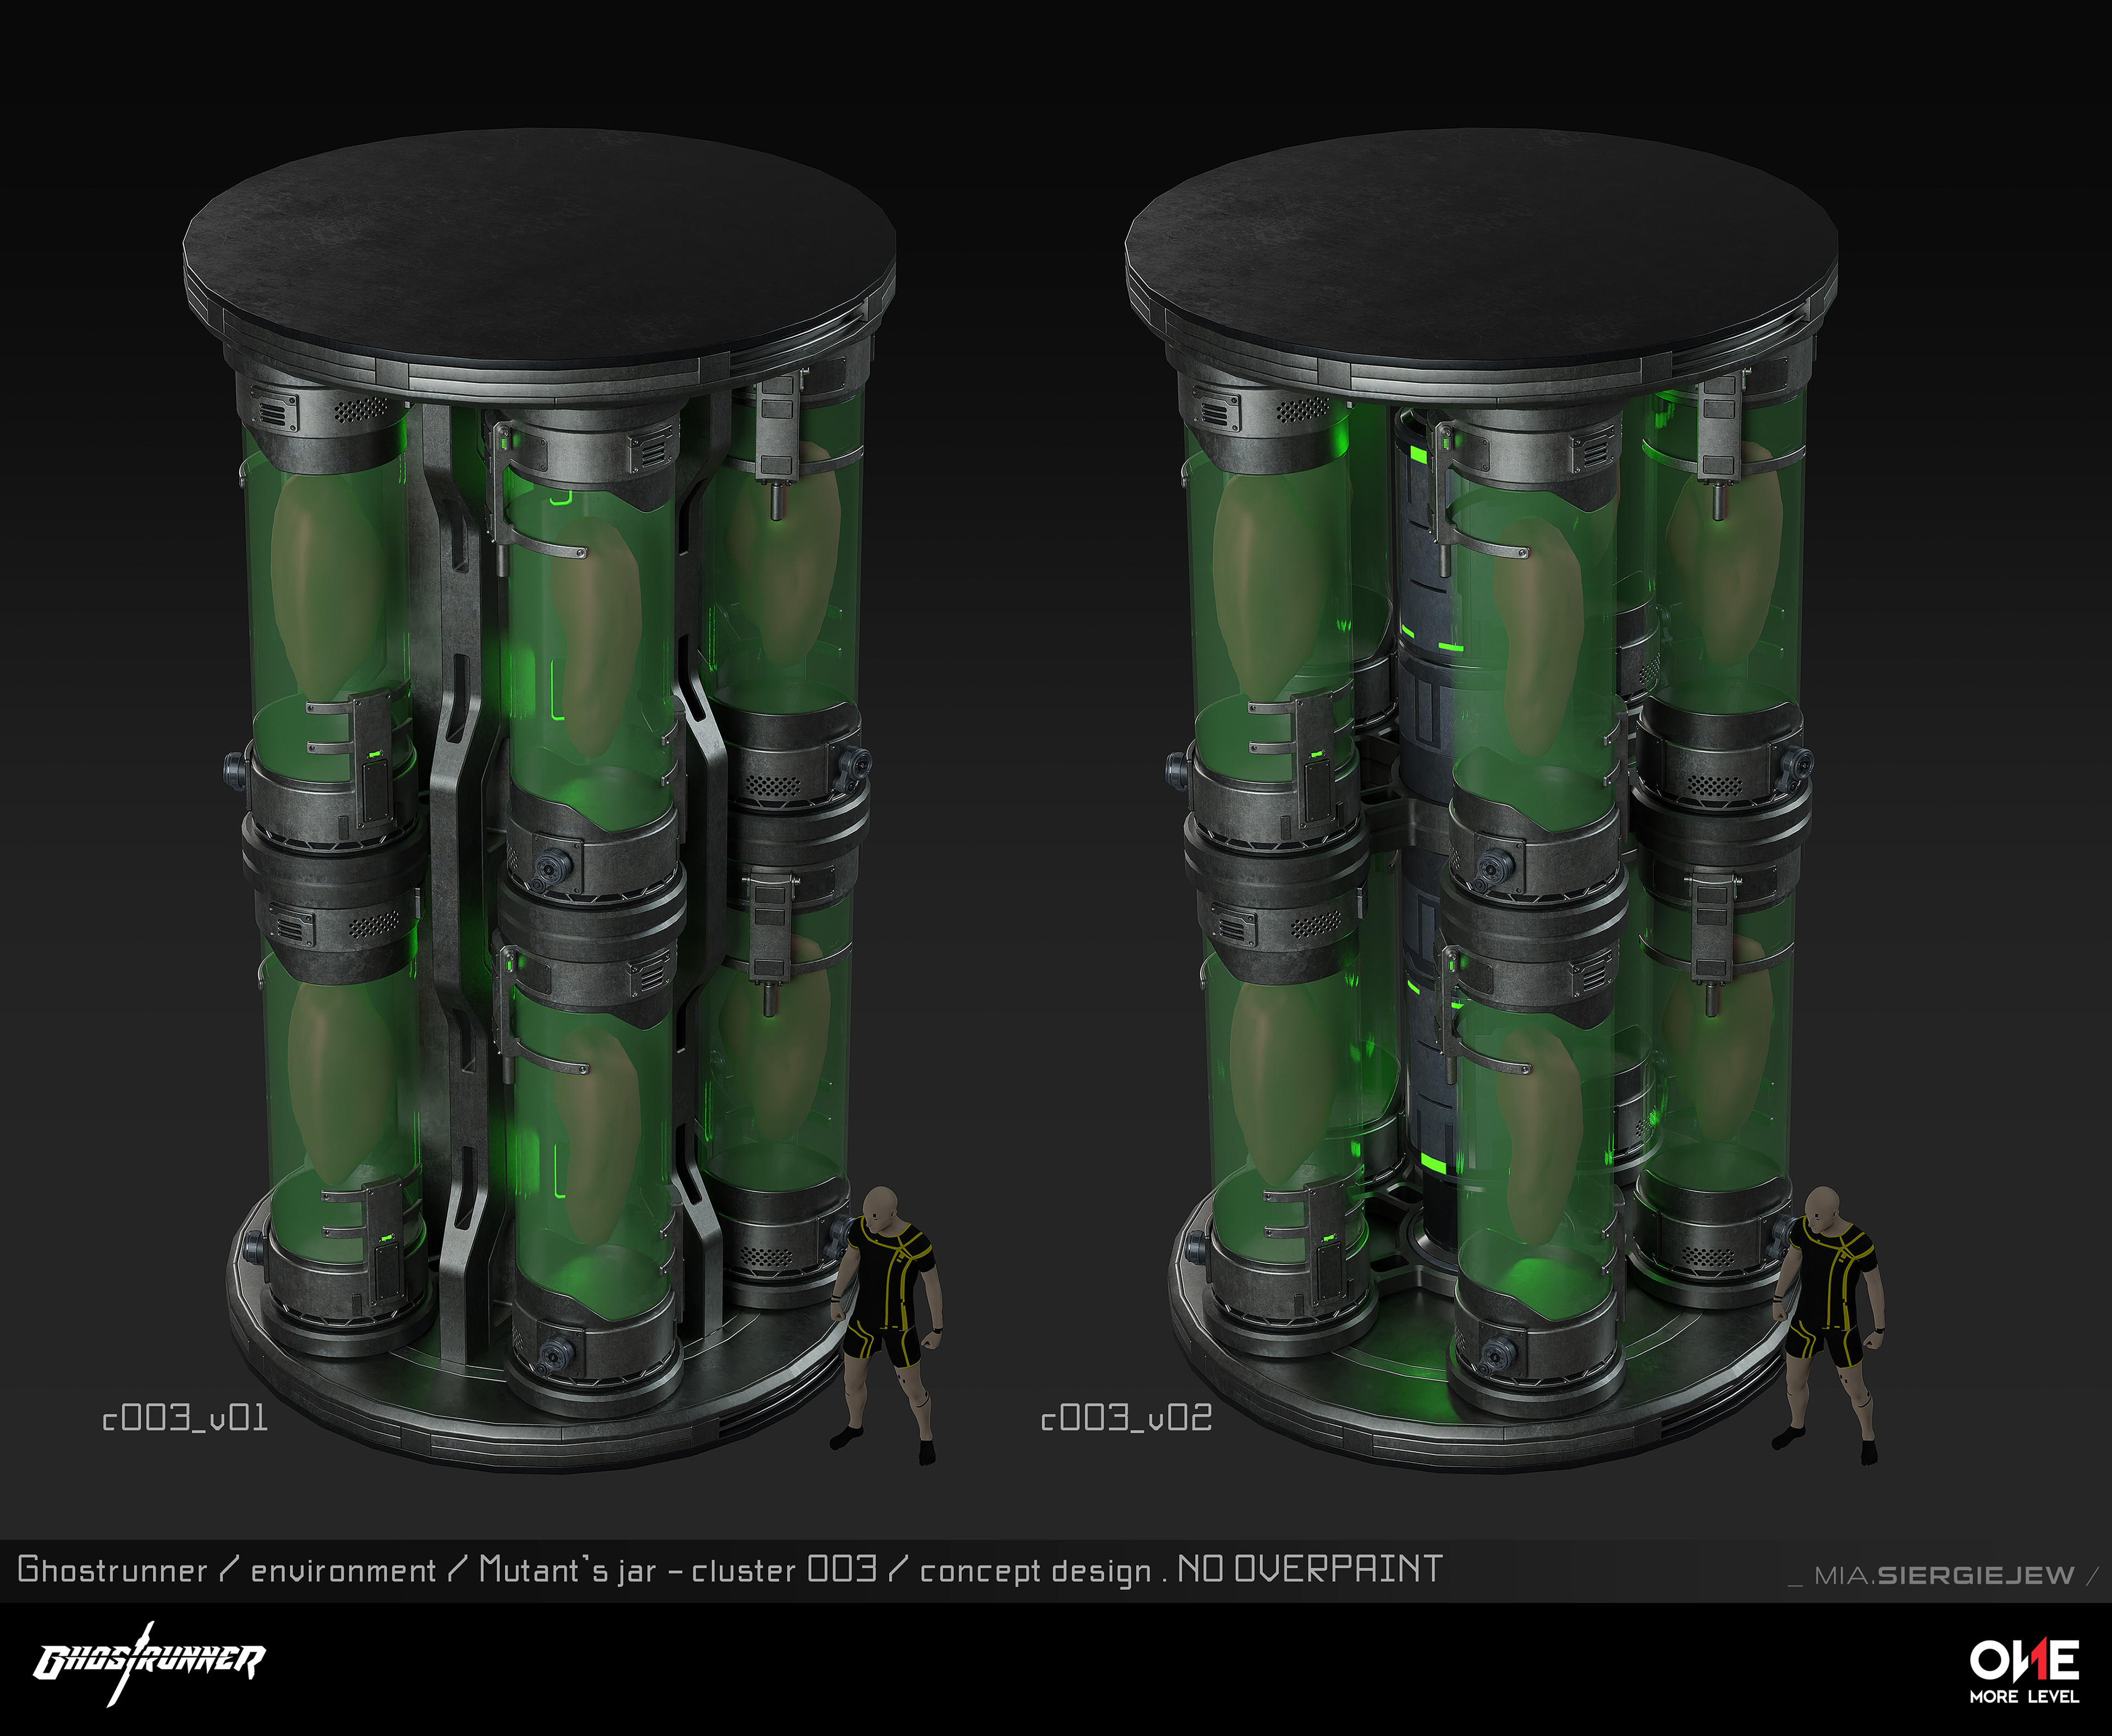 Final cluster of jars design - raw model.